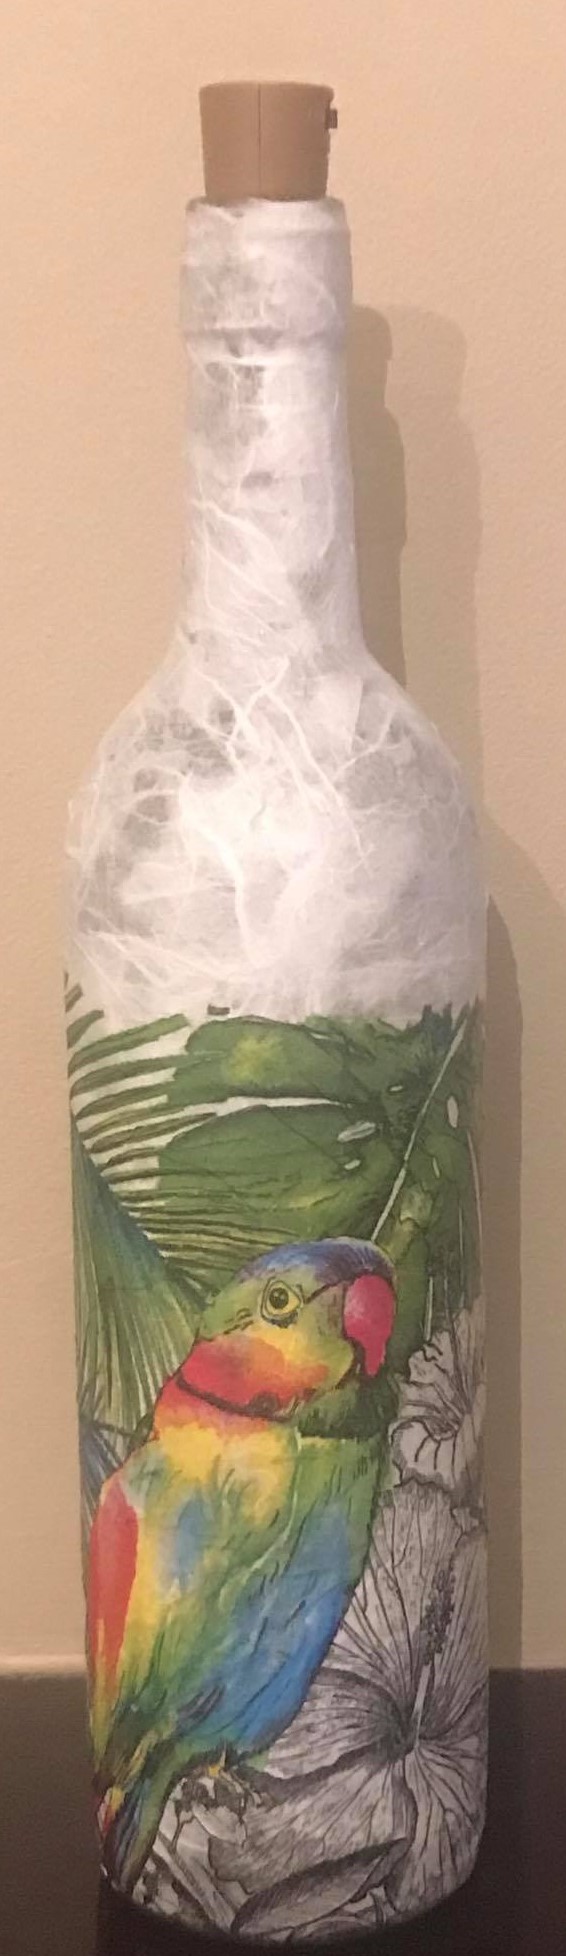 Parrot Light Up Bottle